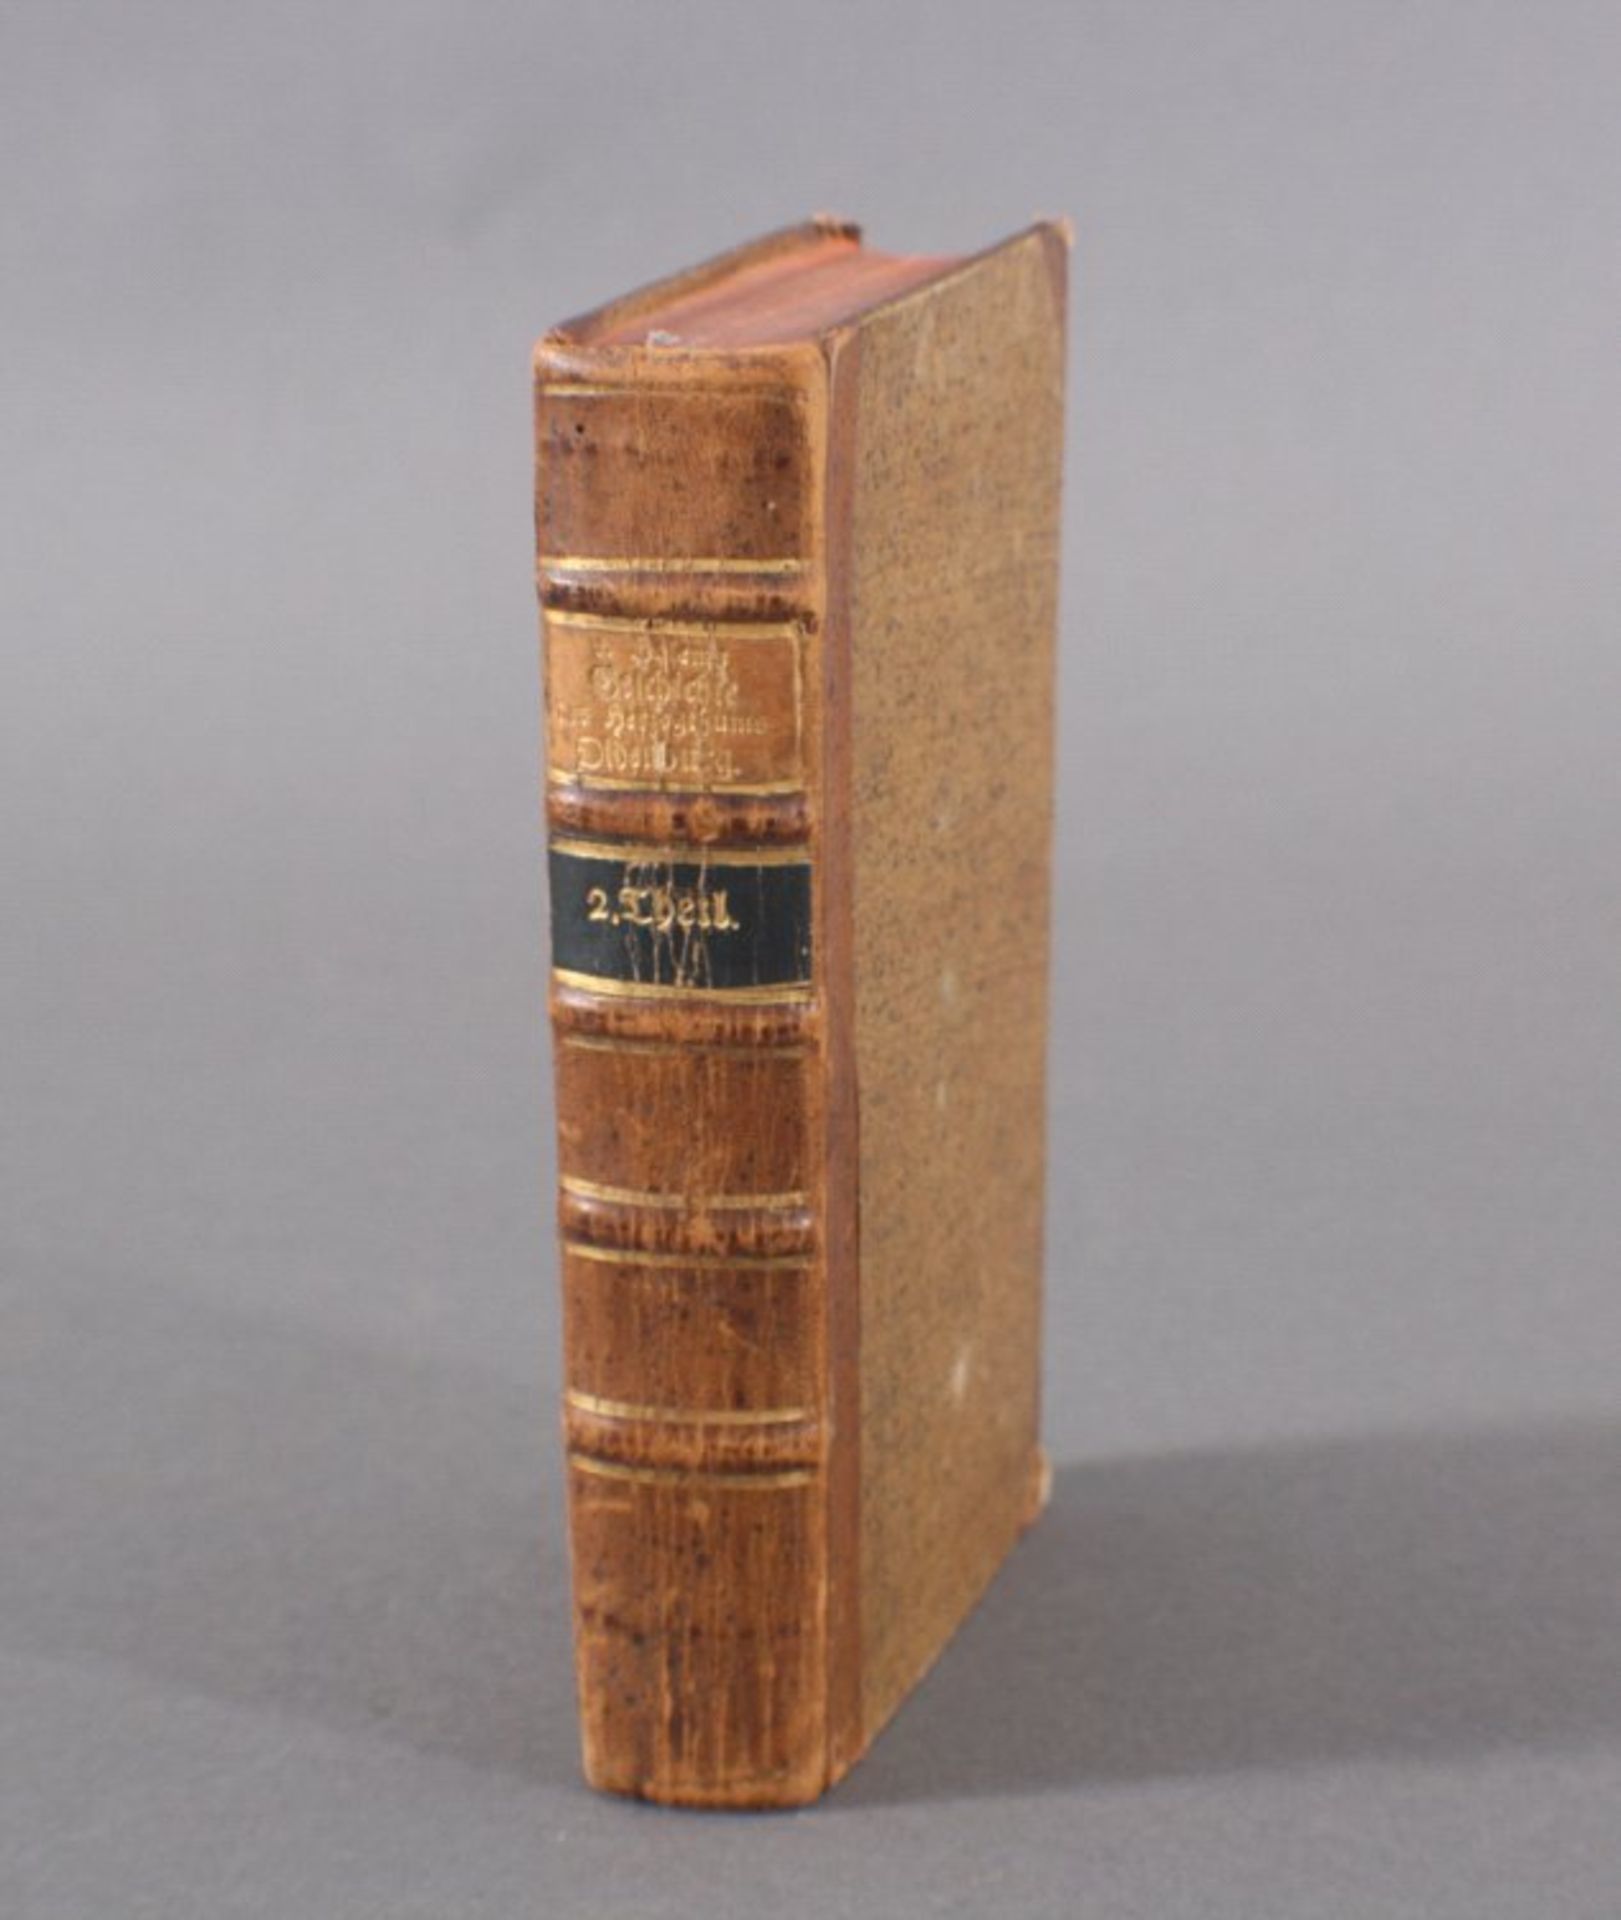 Geschichte des Herzogtums OldenburgVon Anton von Harlem, 2. Teil, Oldenburg 1795, vollständig,517